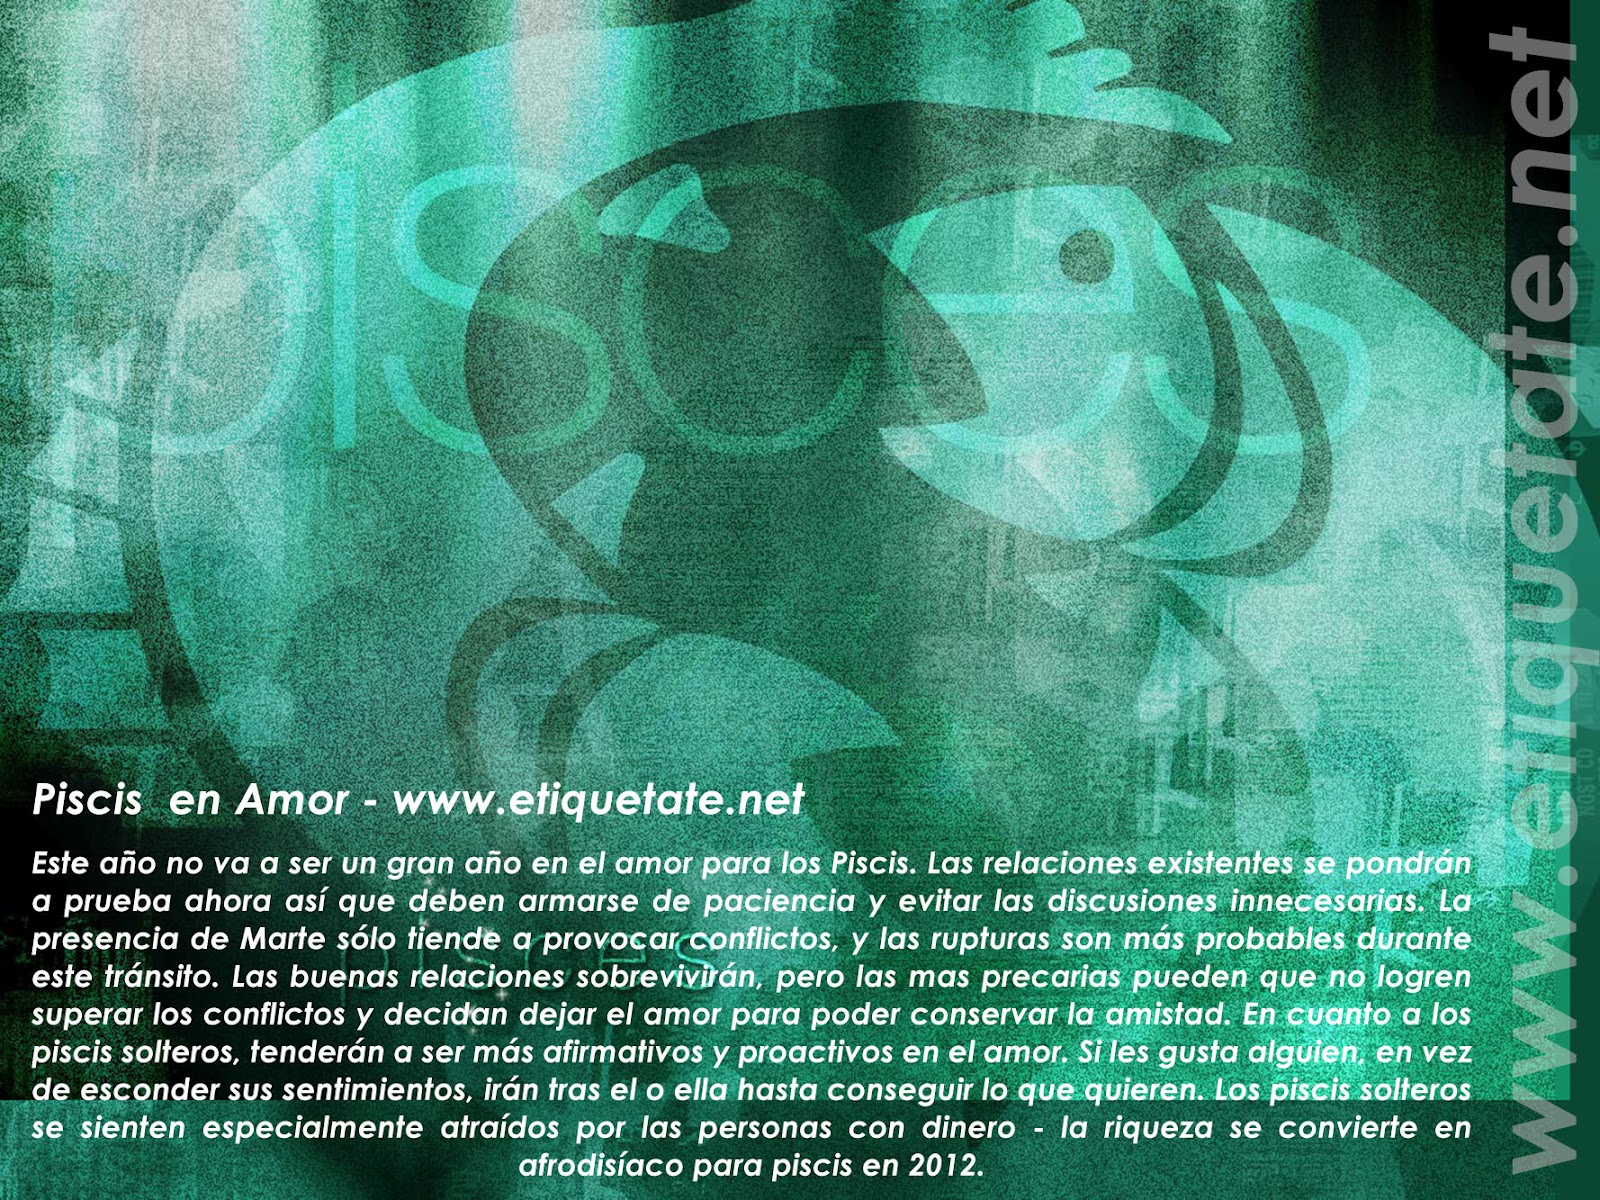 http://3.bp.blogspot.com/-LLQrskxh0dE/UEAy74m6RHI/AAAAAAAAHfw/jzNTMoXwFMI/s1600/Piscis+en+El+Amor+-+Imagenes+de+los+Signos+del+Zodiaco+para+Facebook.jpg